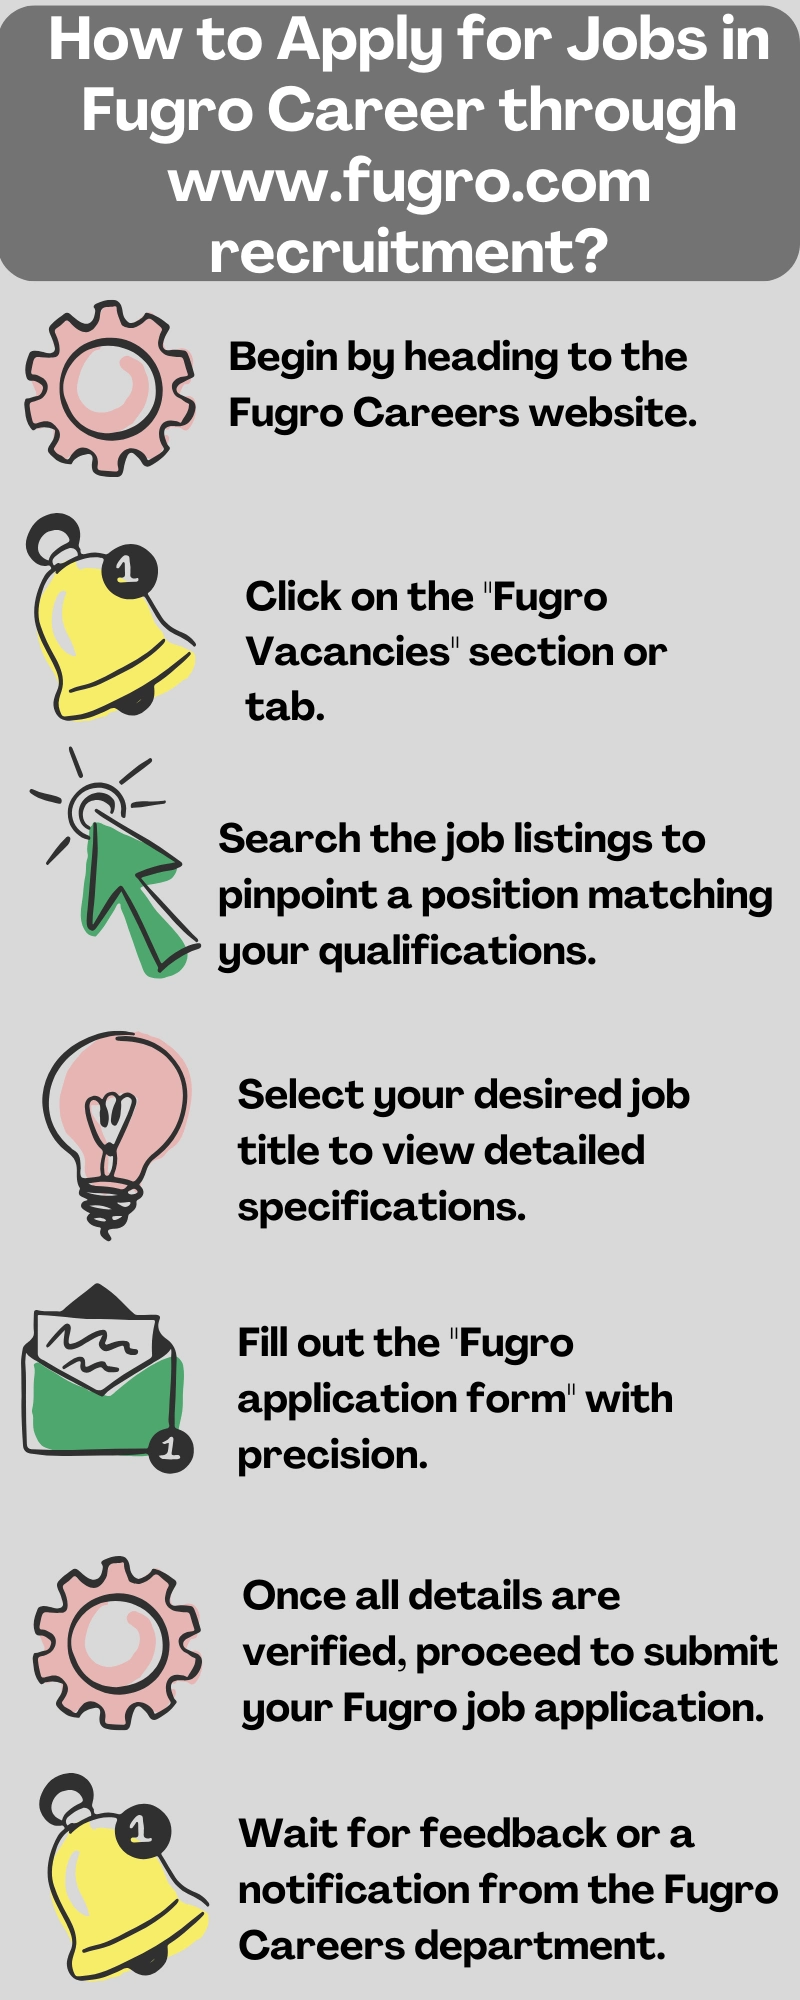 How to Apply for Jobs in Fugro Career through www.fugro.com recruitment?